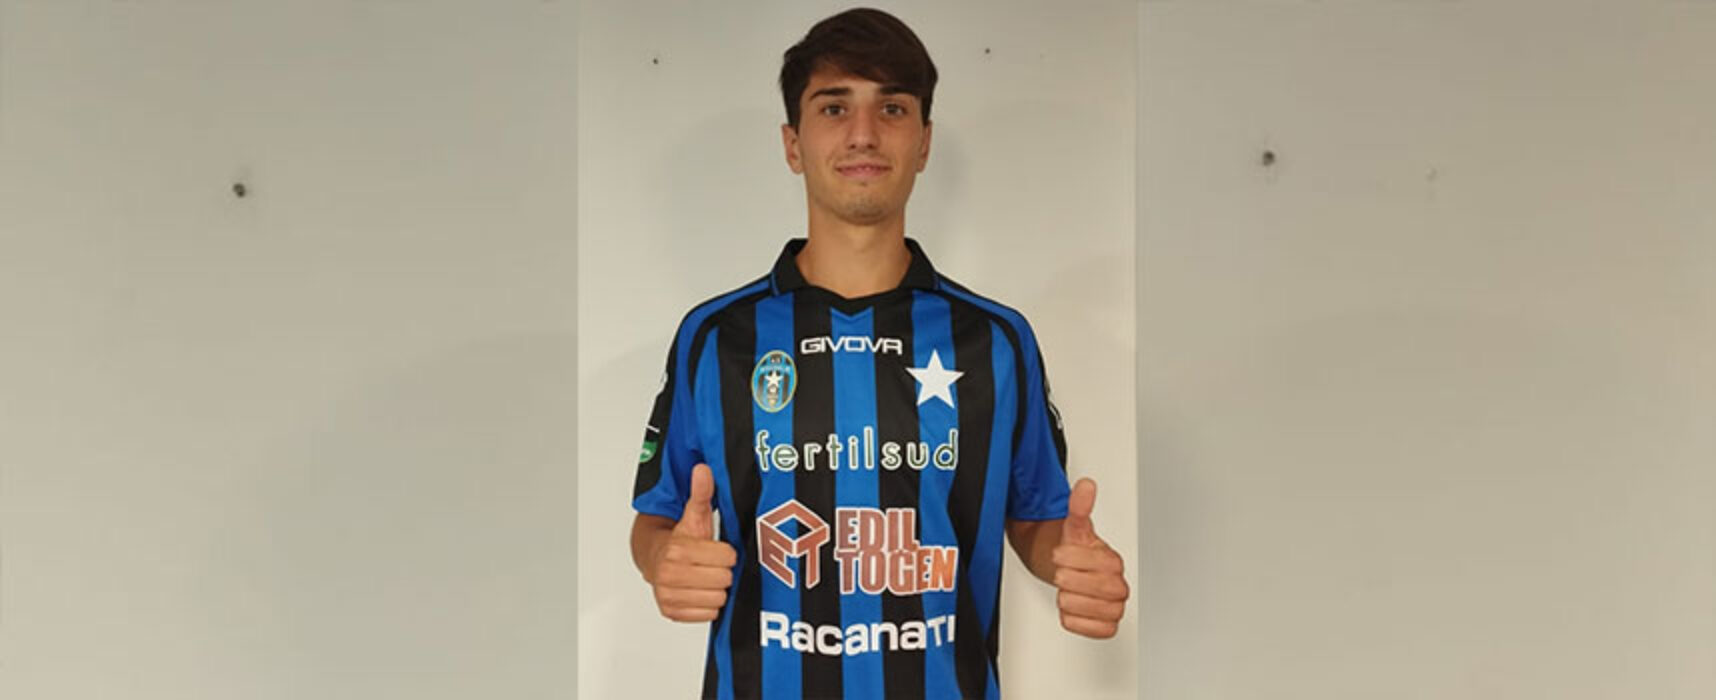 Flavio Ferrante new entry in casa Bisceglie Calcio